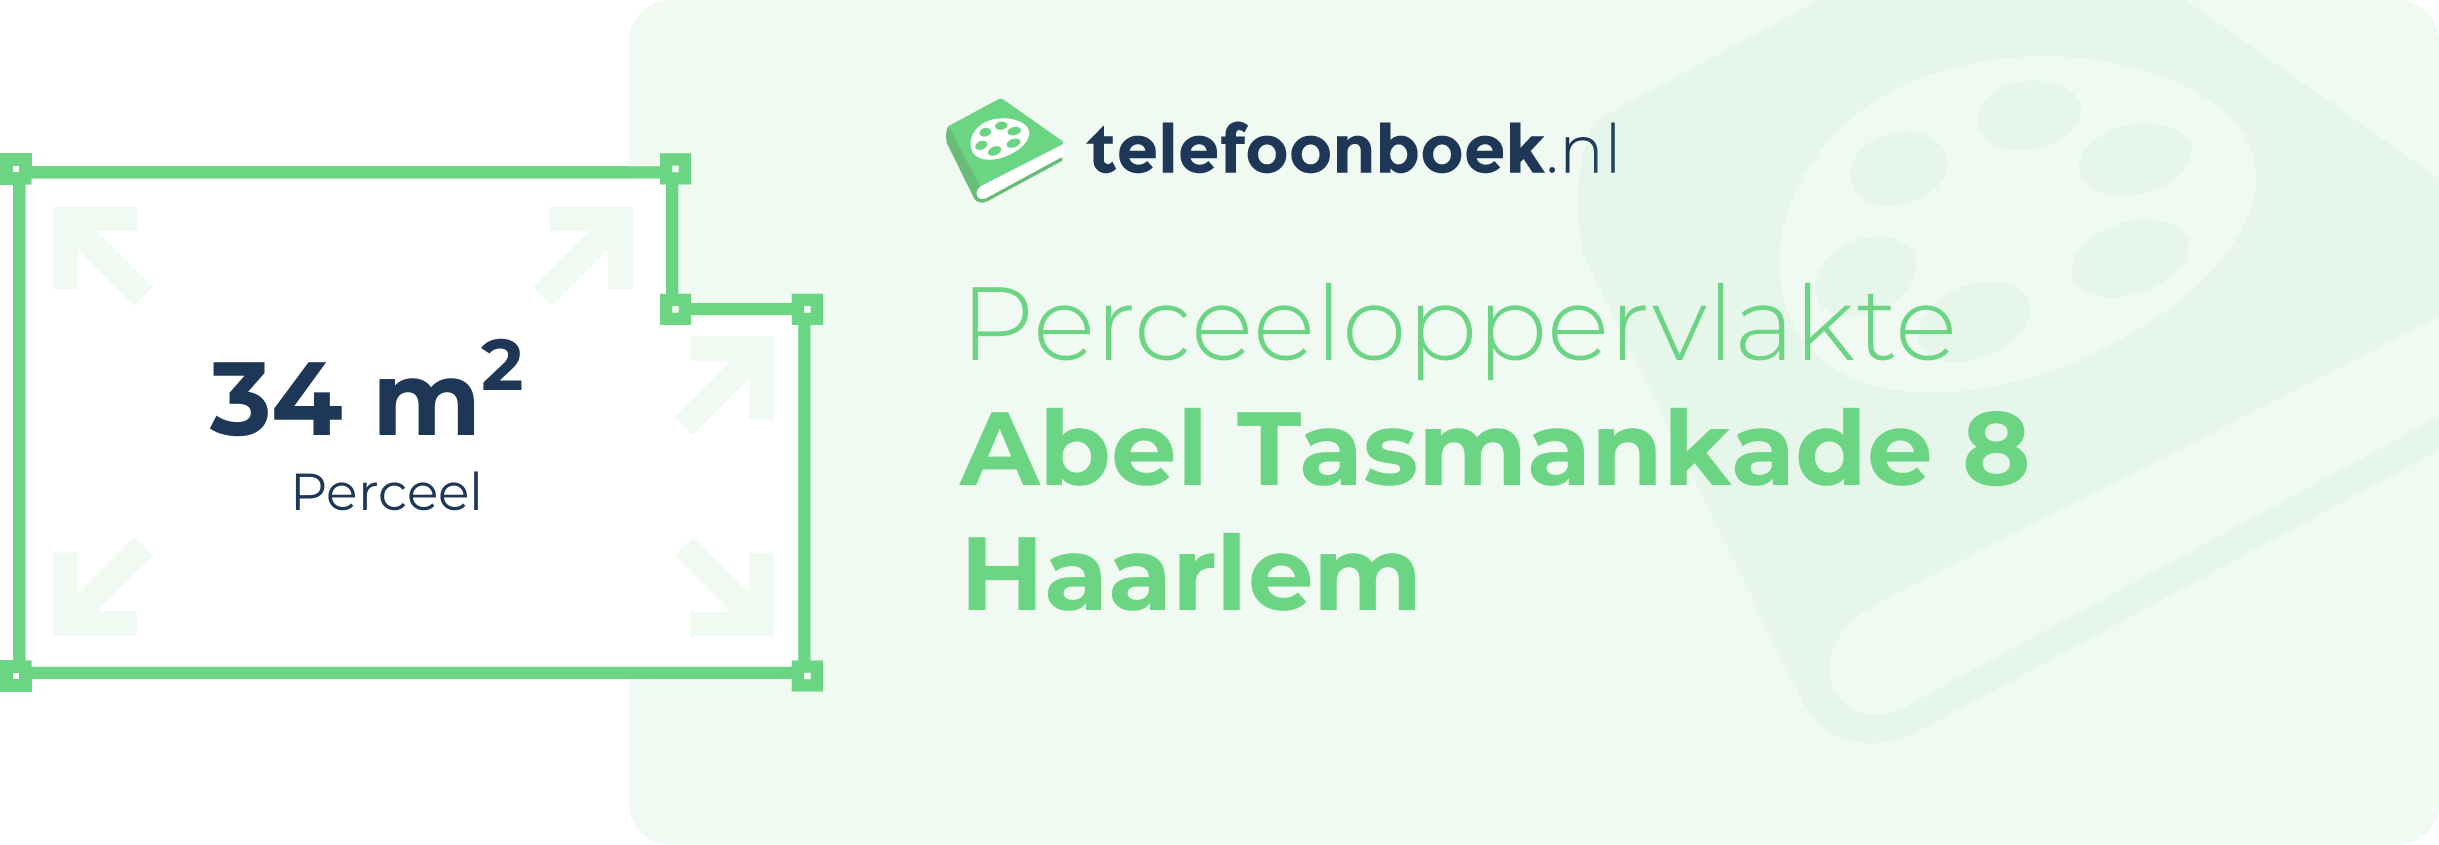 Perceeloppervlakte Abel Tasmankade 8 Haarlem